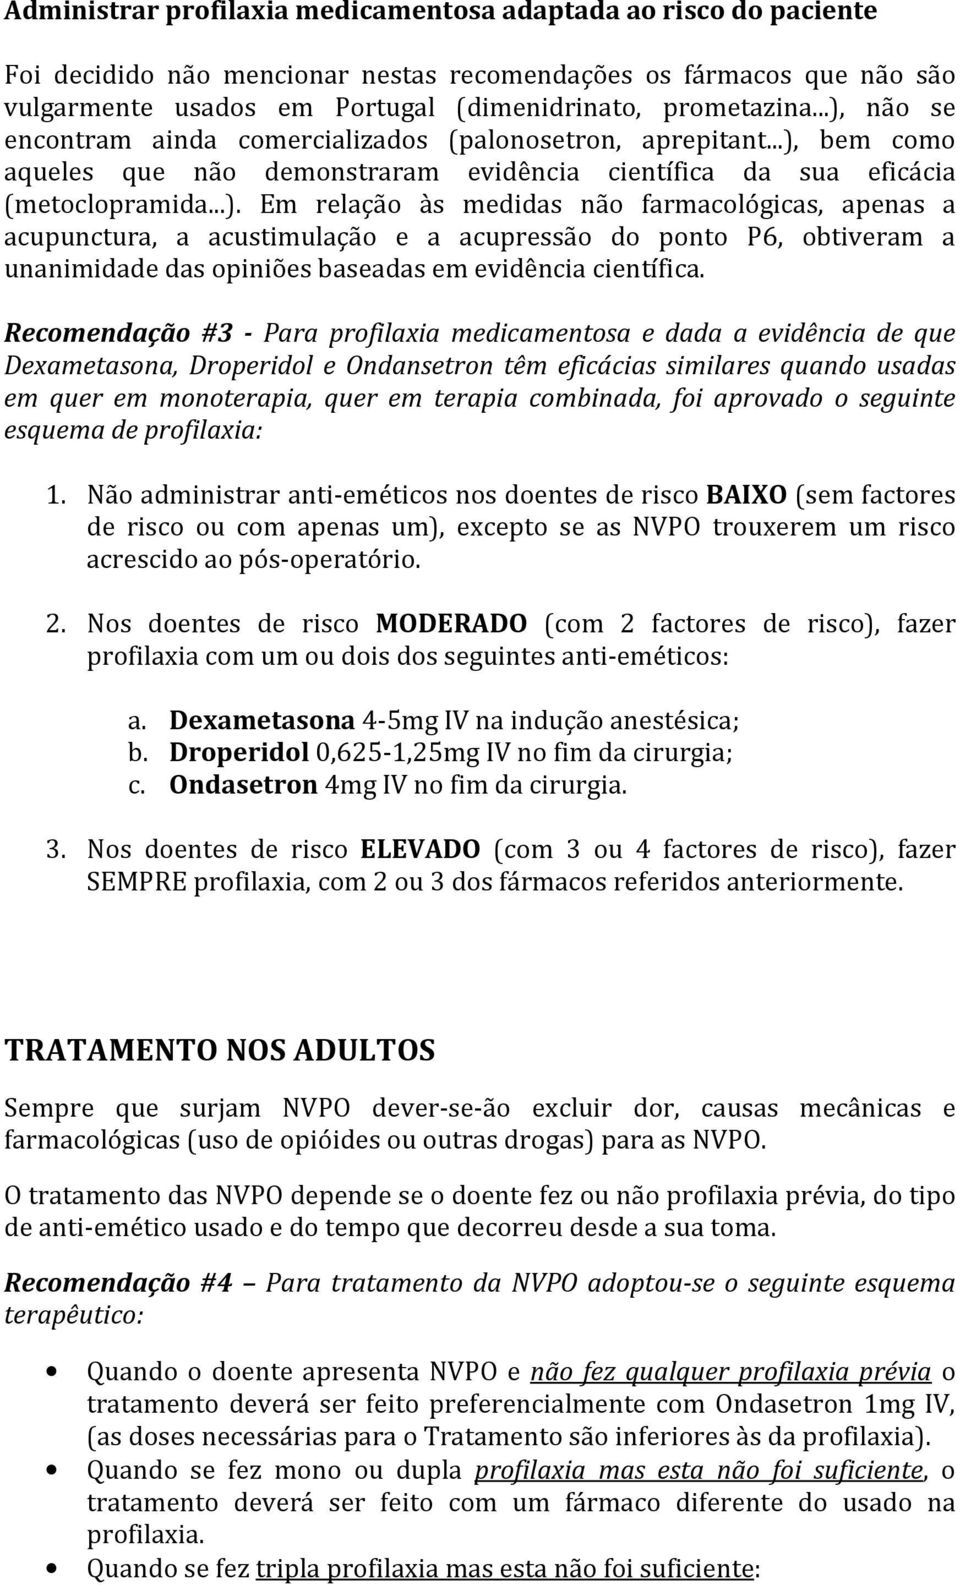 Recomendação #3 - Para profilaxia medicamentosa e dada a evidência de que Dexametasona, Droperidol e Ondansetron têm eficácias similares quando usadas em quer em monoterapia, quer em terapia